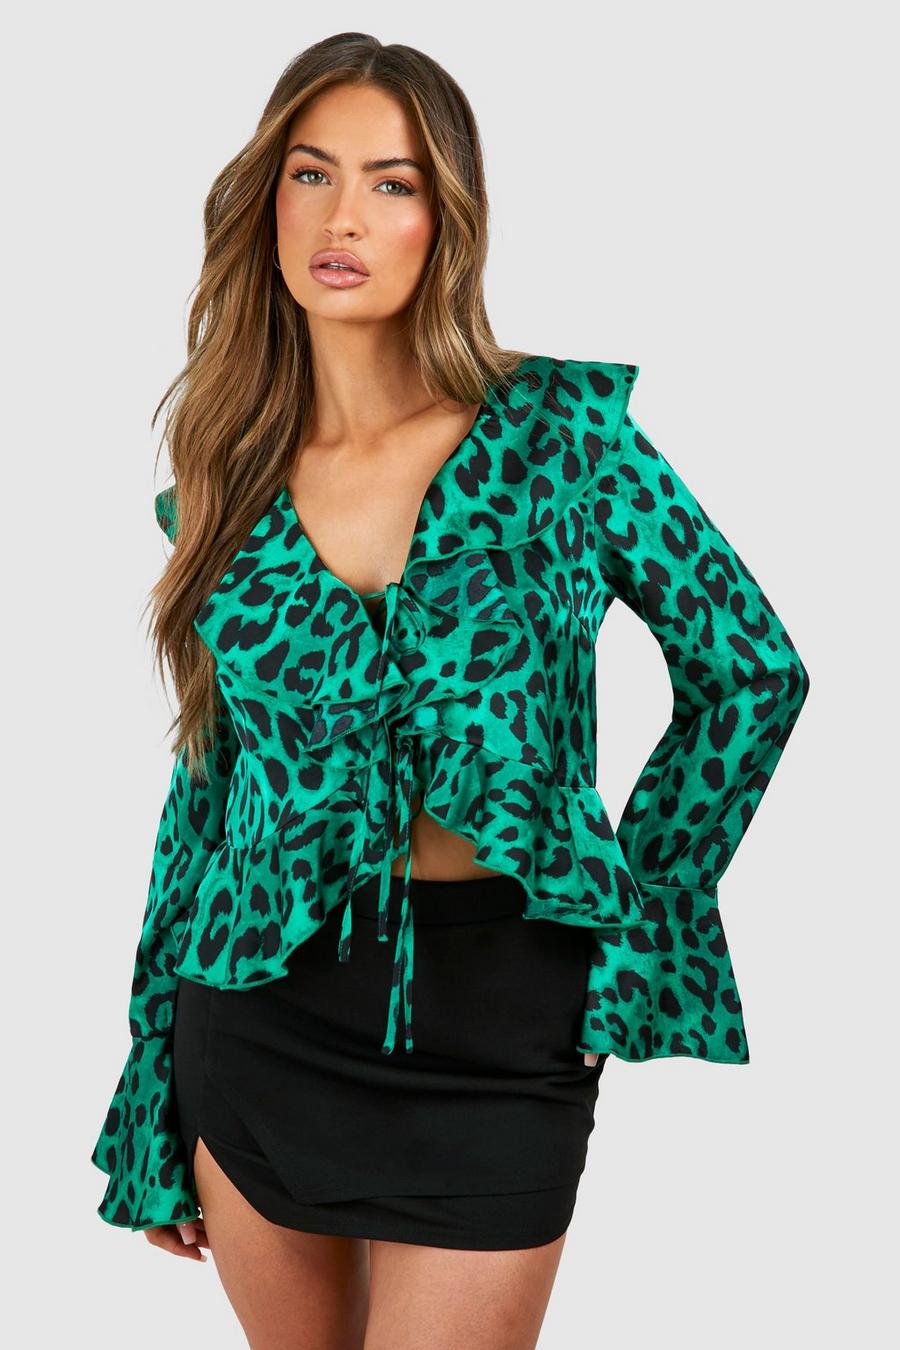 Green Leopard Ruffle Chiffon Printed Blouse